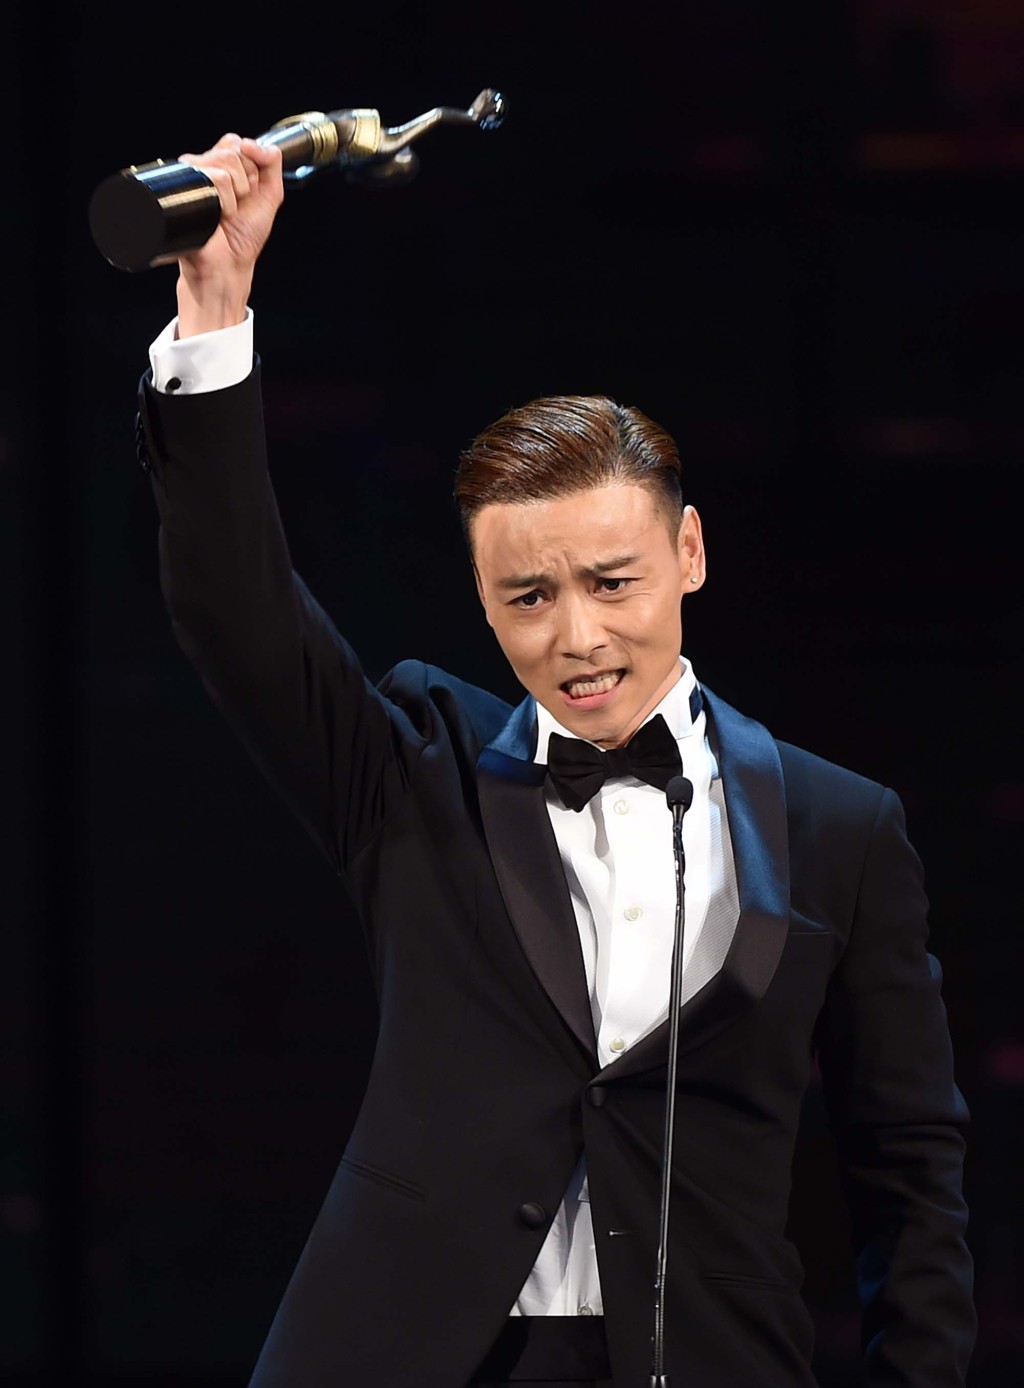 張晉曾勇奪第33屆香港金像獎最佳男配角